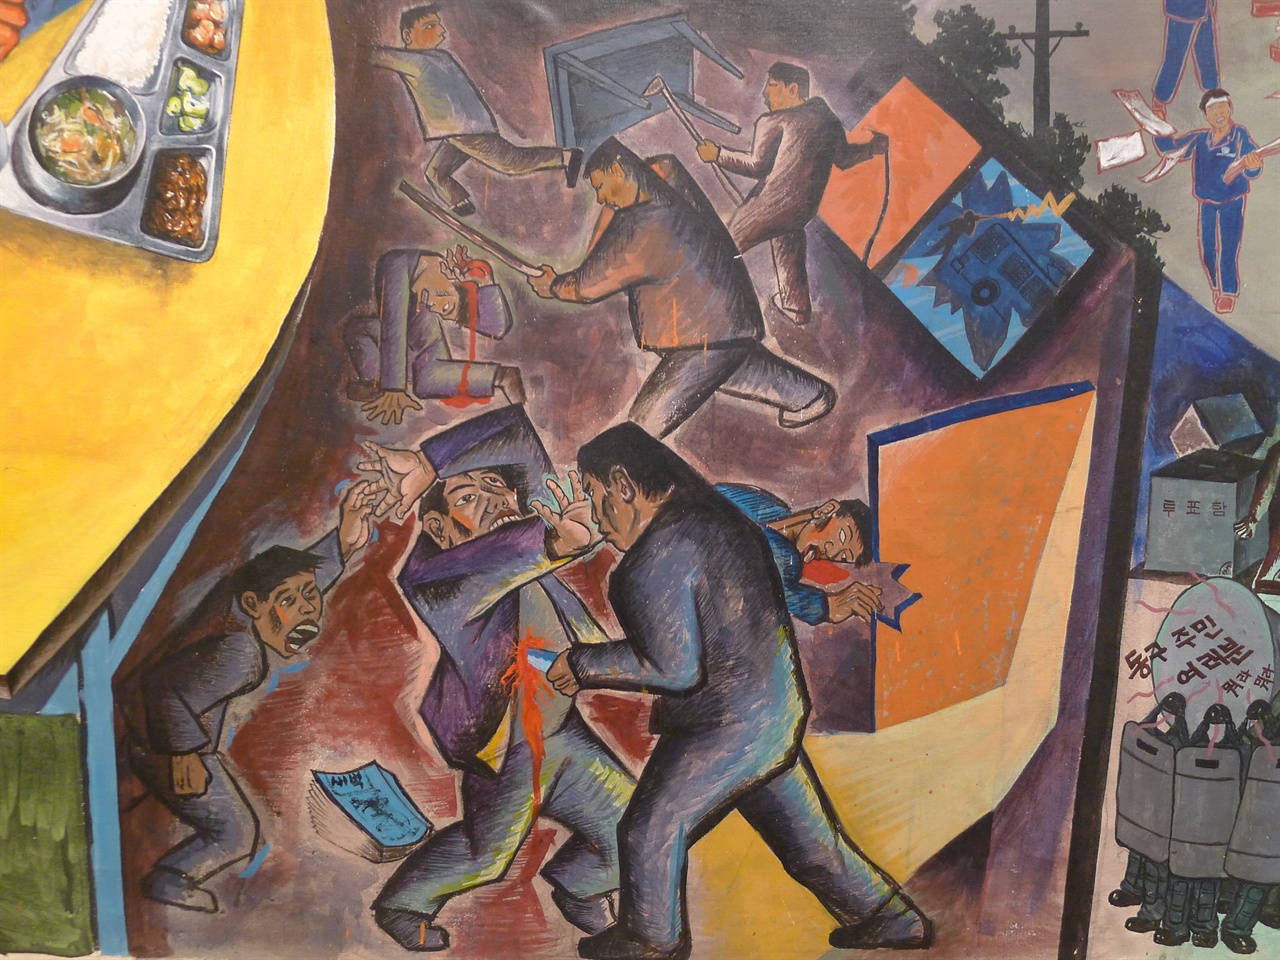 걸개그림 현대노동운동사 중 노동자 대상 테러 사건을 다룬 그림 부분